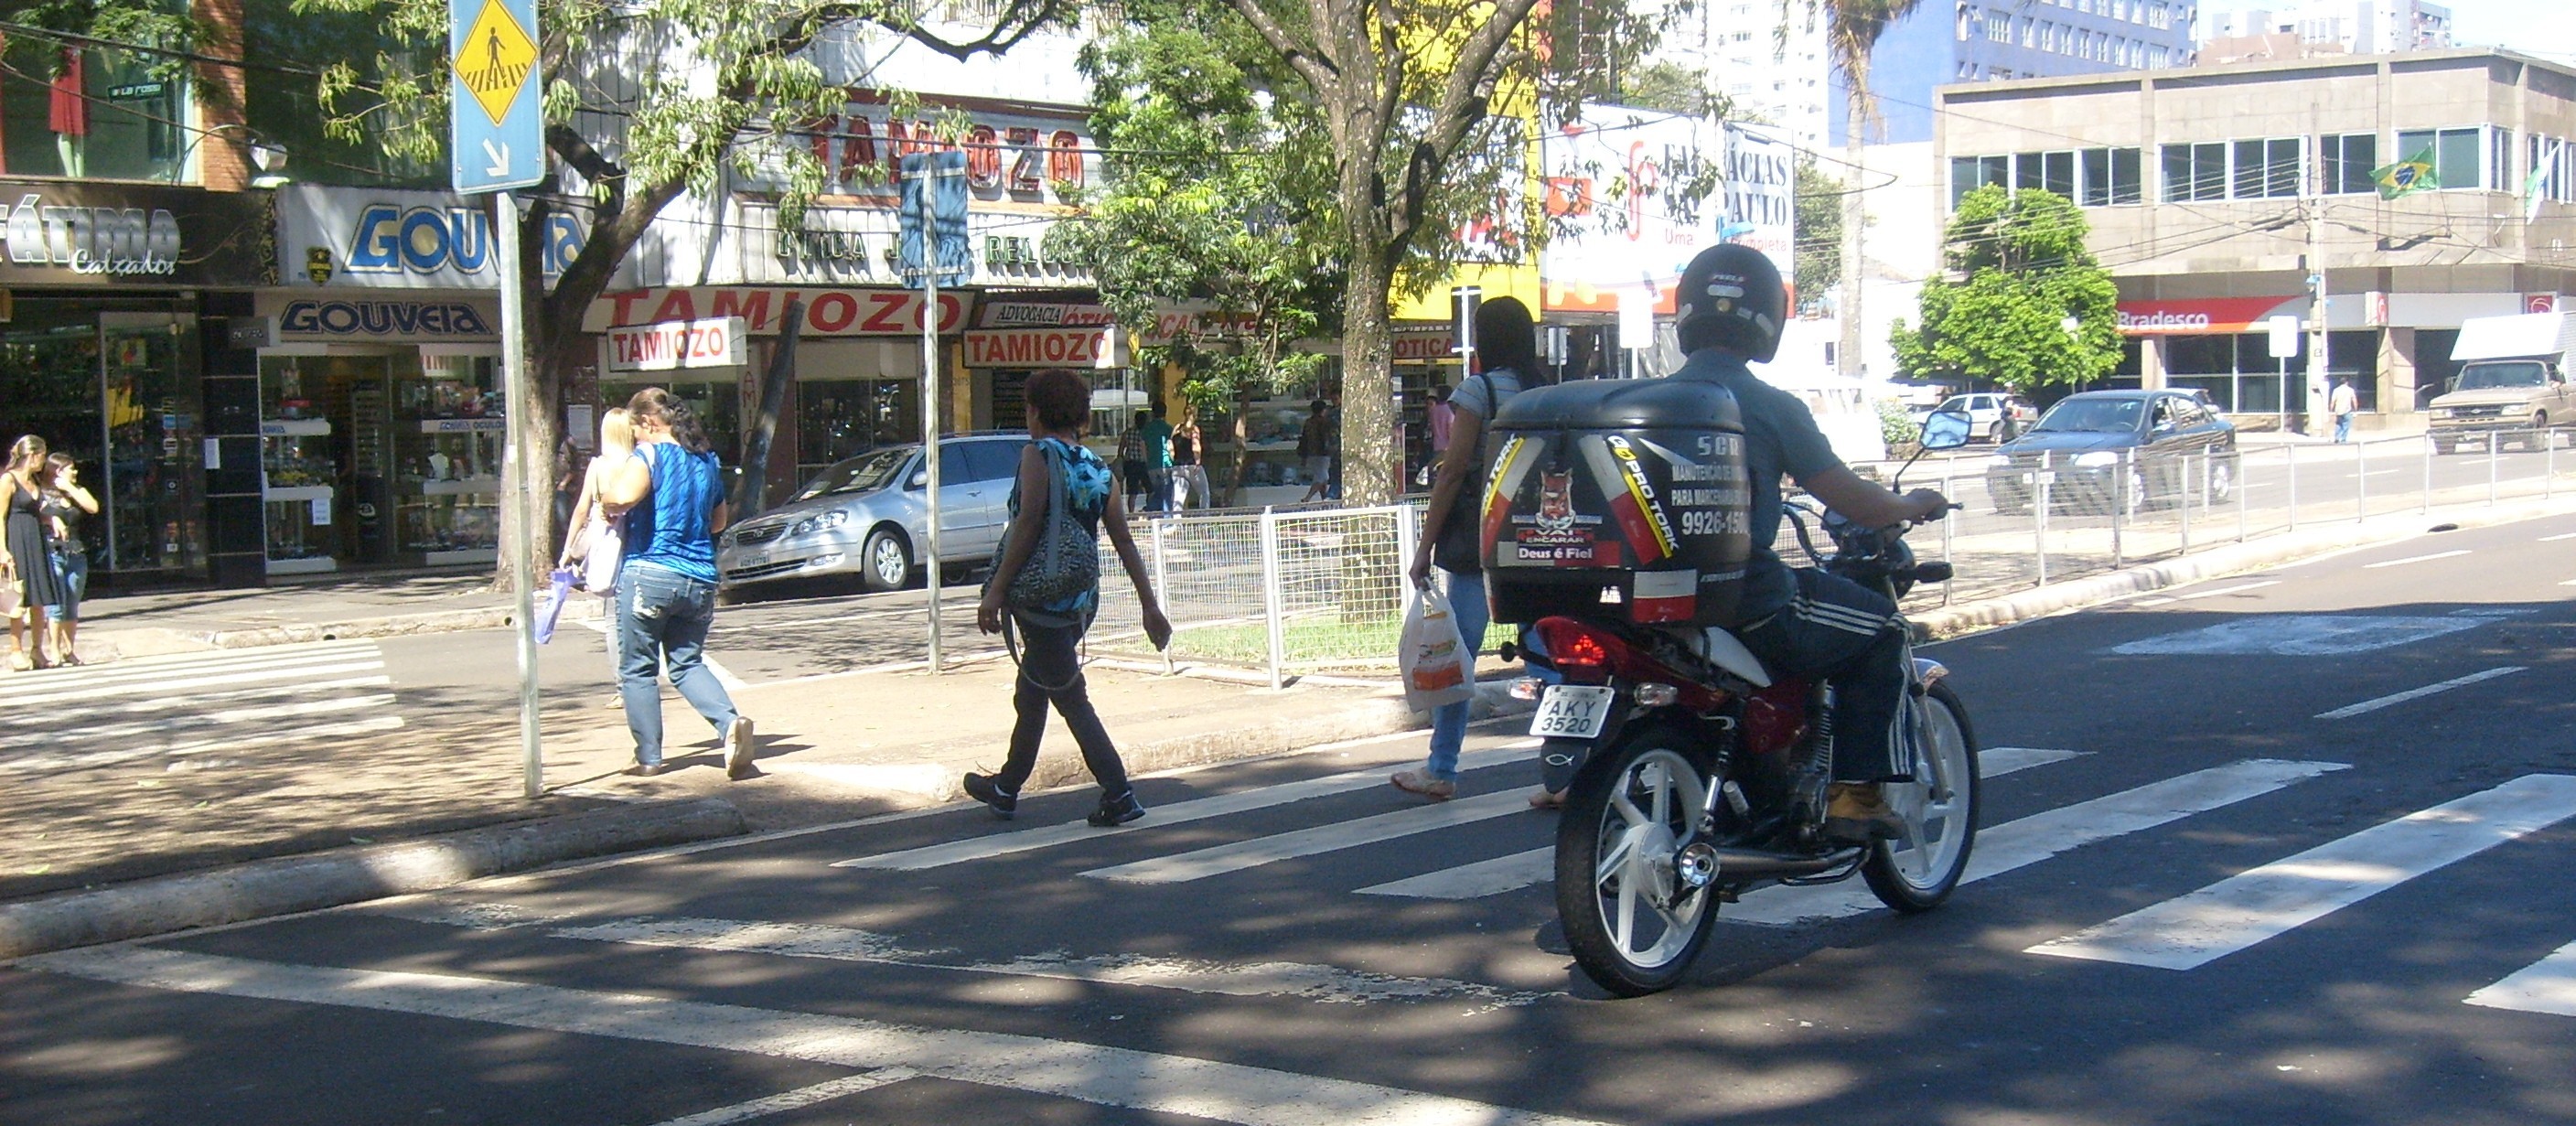 Quase 75% das mortes no trânsito são de pedestres e motociclistas